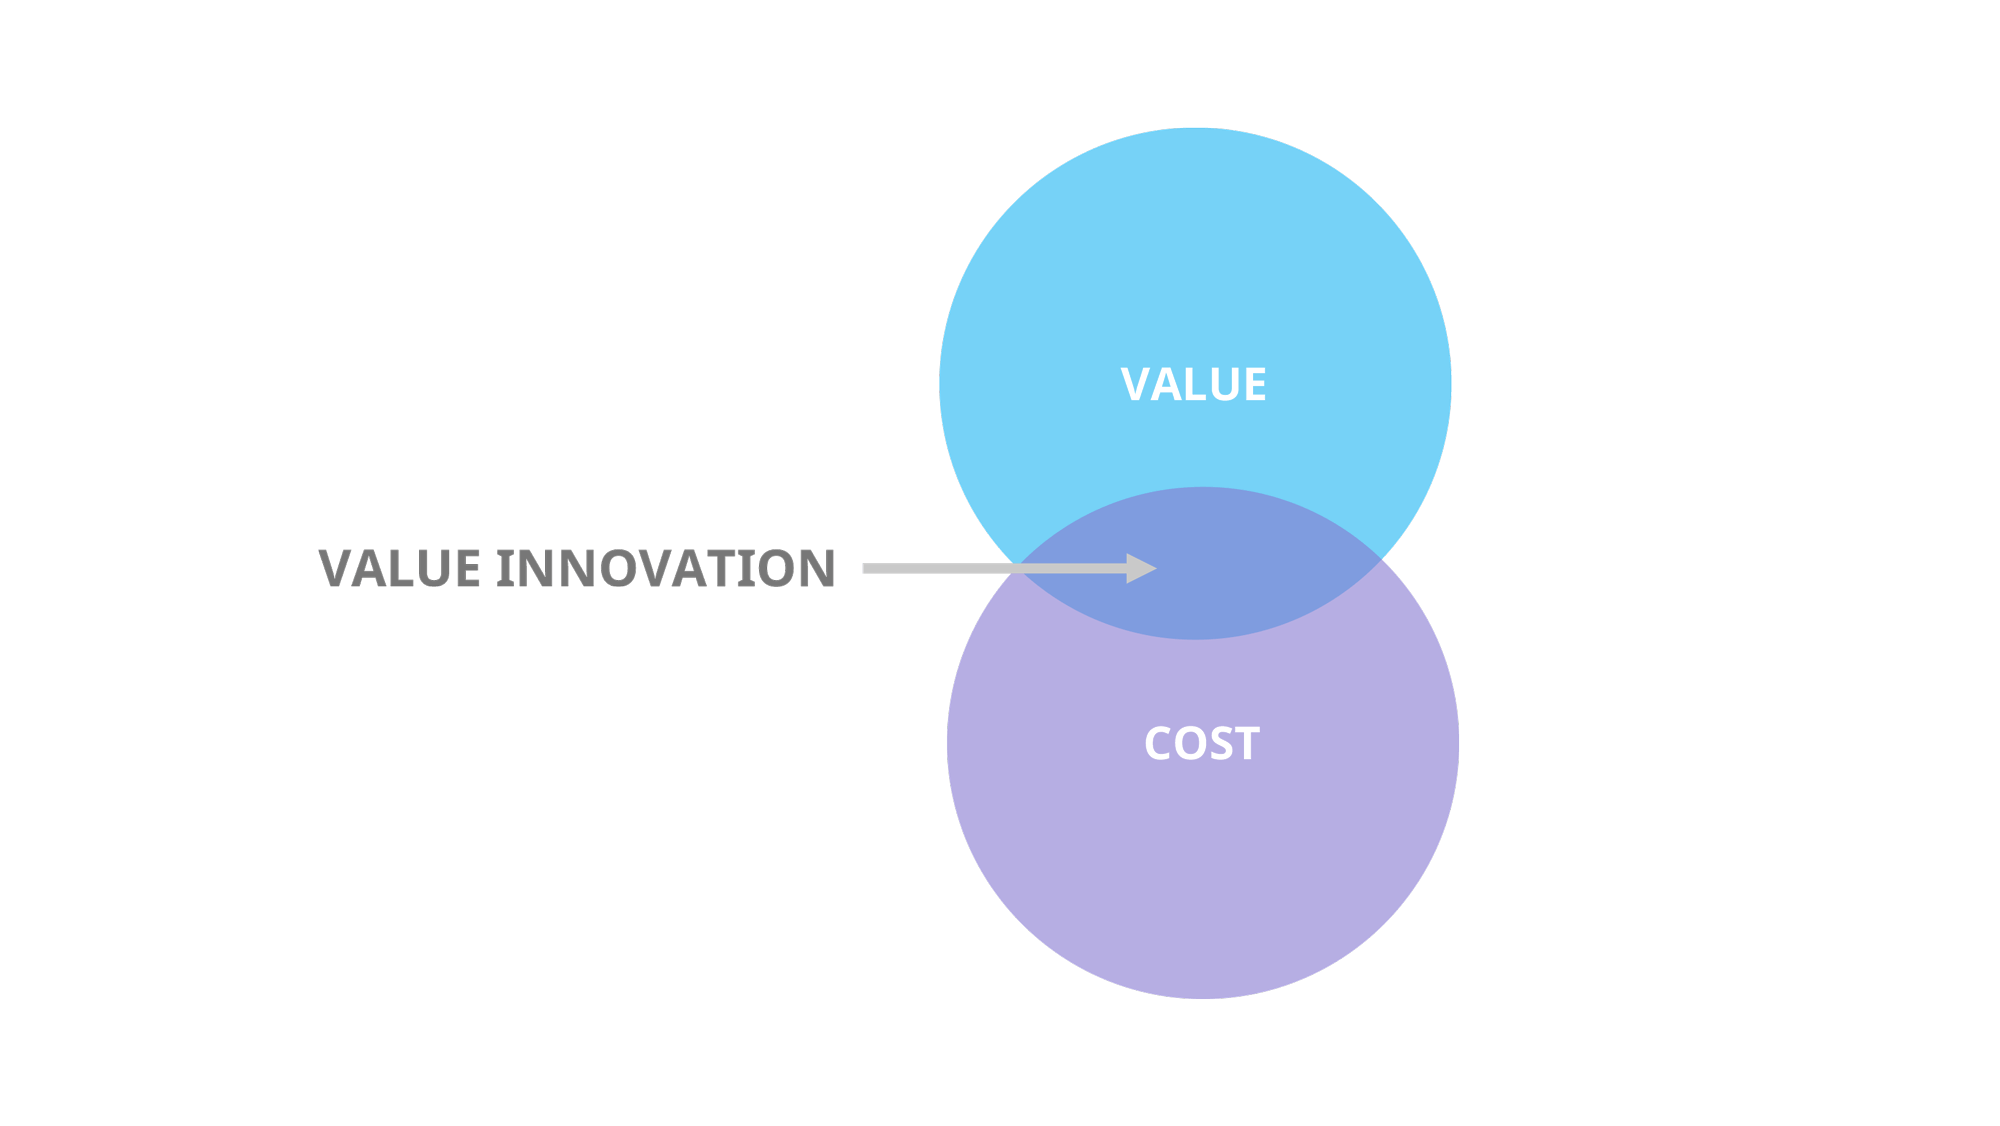 Value innovation